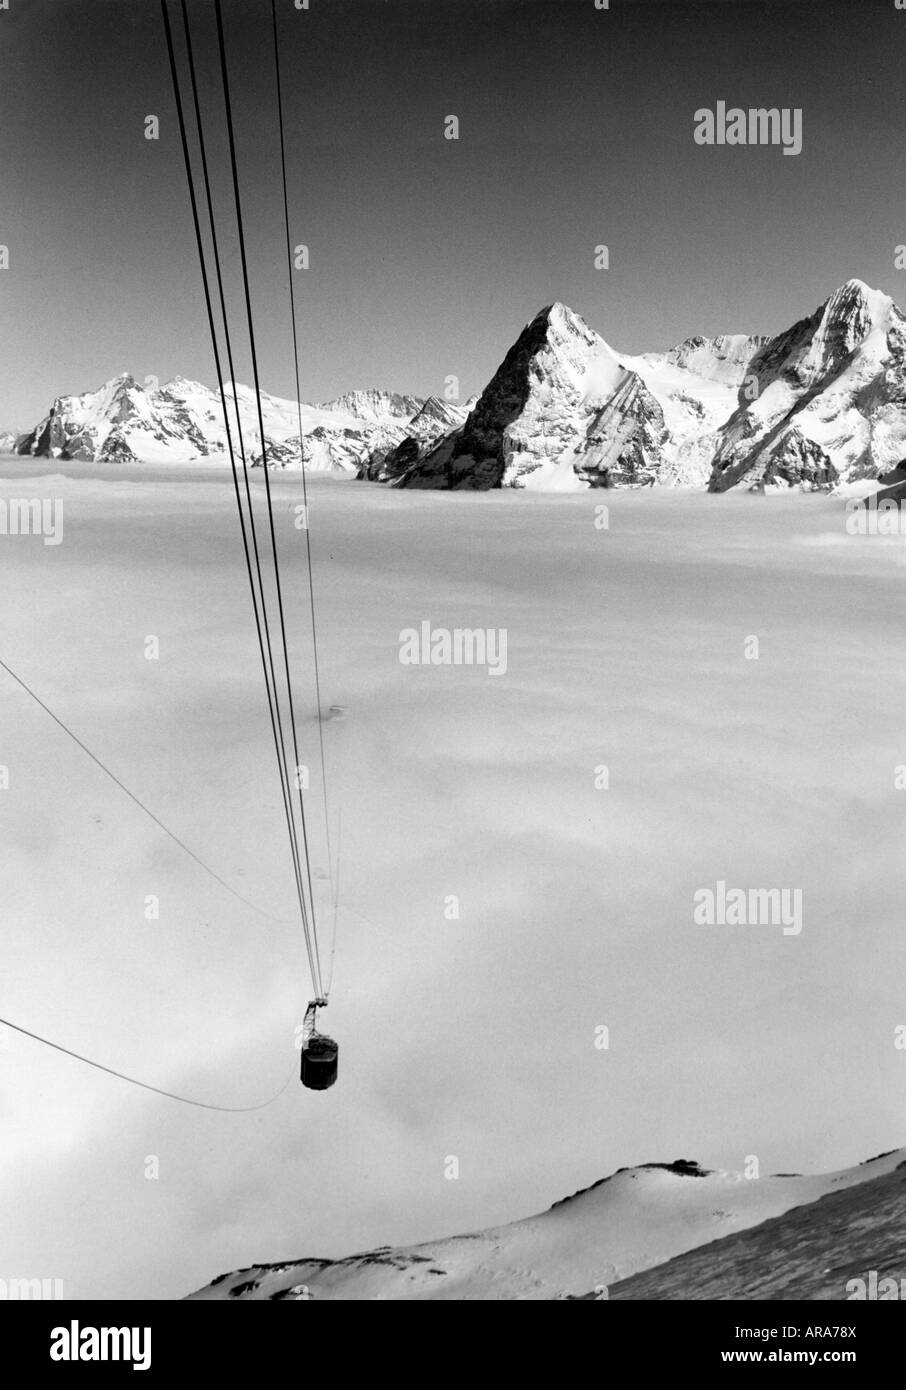 Sport, sports d'hiver, ascenseurs aériens, télécabine Schilthornbahn, Oberland bernois, Suisse, fin des années 1960, Banque D'Images